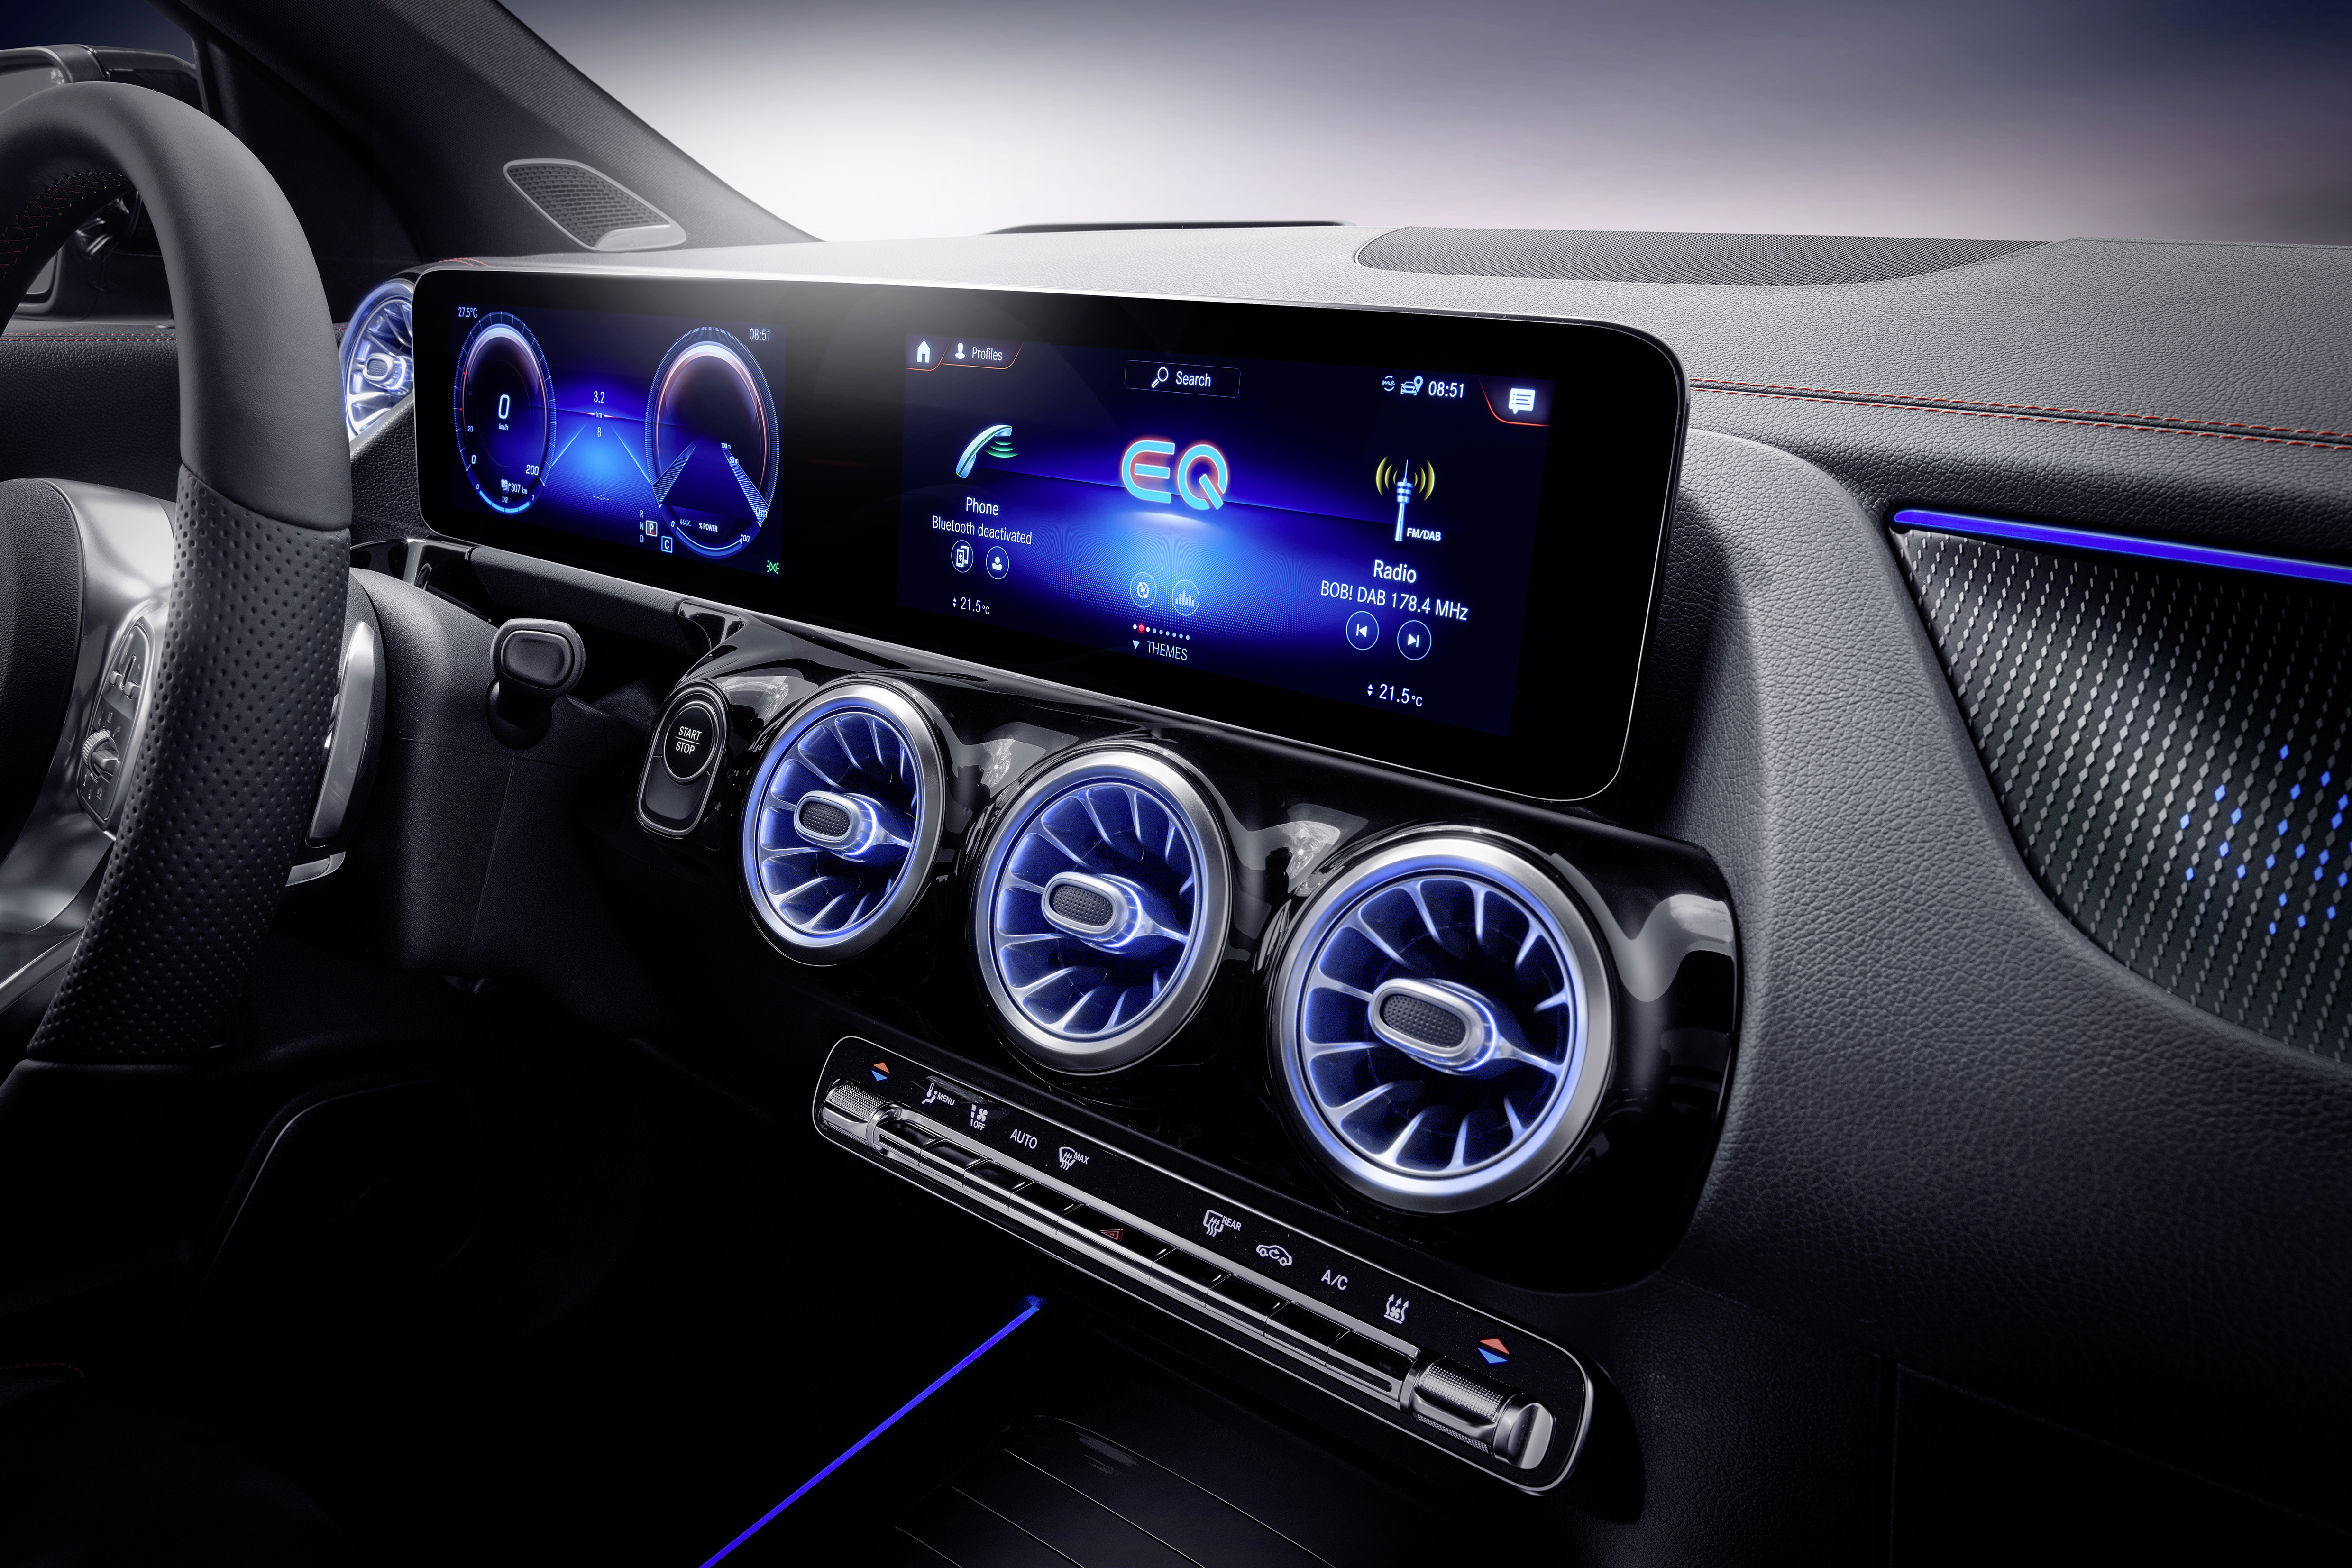 09-更为直观的EQ专属仪表盘和多媒体显示屏成为车内的视觉亮点.jpg